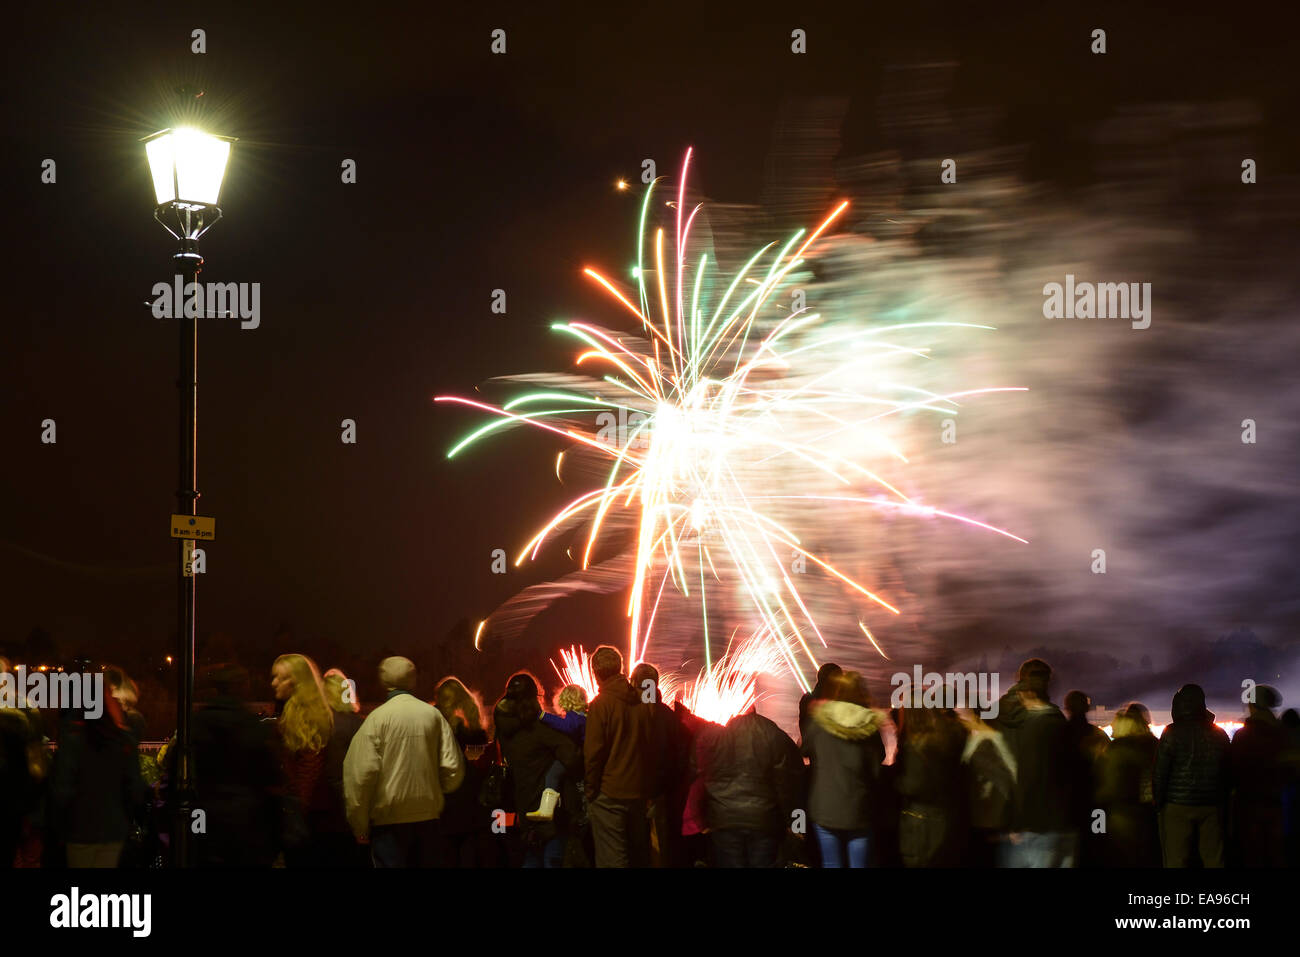 Las multitudes disfrutan de un espectáculo de fuegos artificiales del 5 de noviembre en el centro de la ciudad de Chester UK Foto de stock